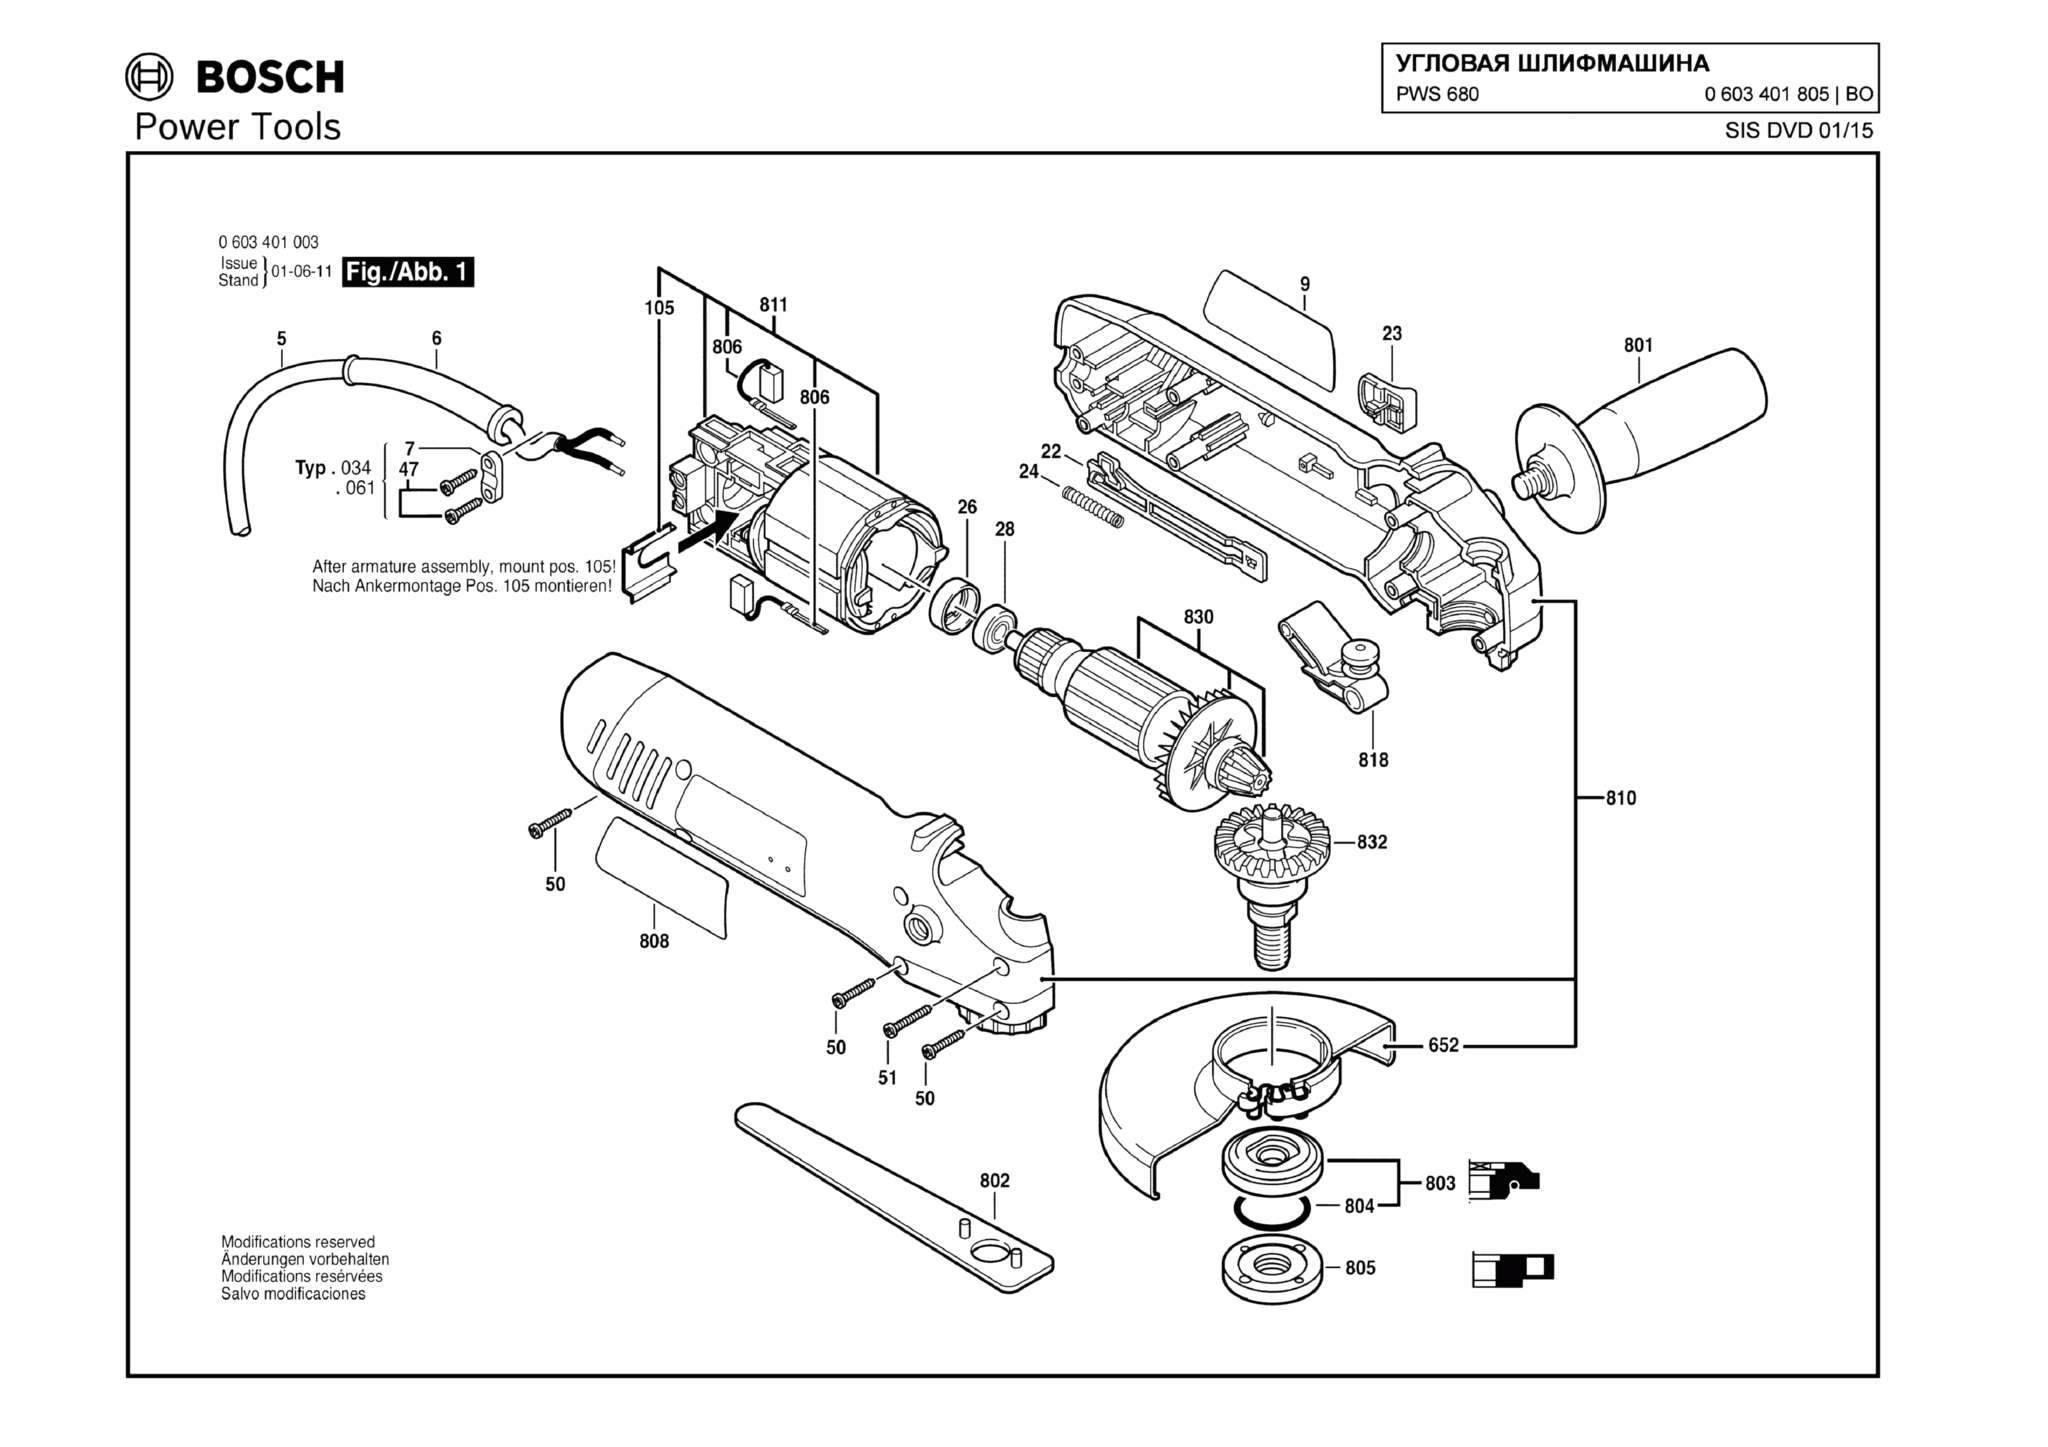 Запчасти, схема и деталировка Bosch PWS 680 (ТИП 0603401805)